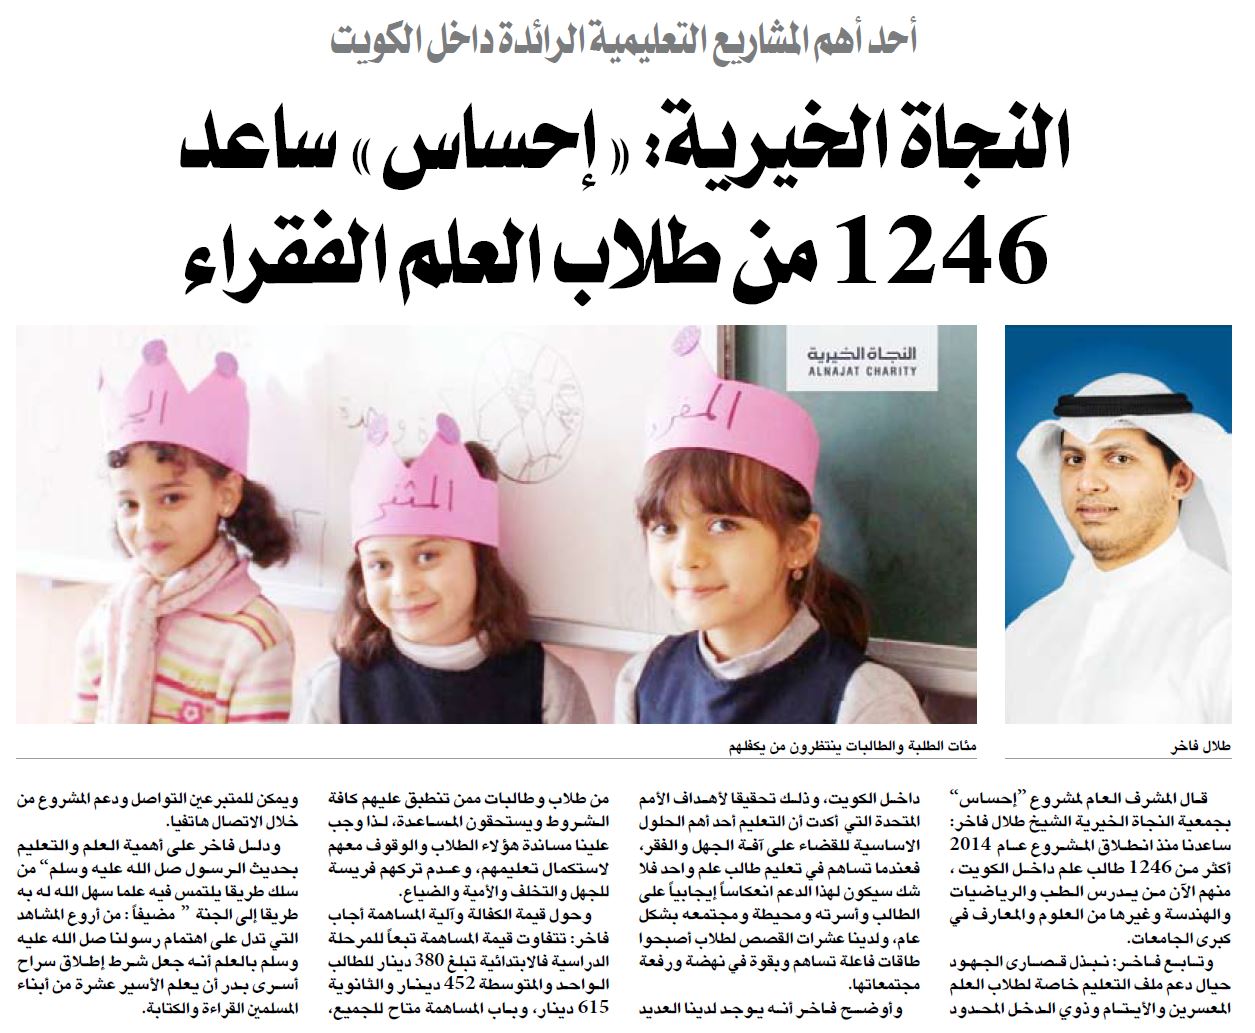 النجاة الخيرية : المشروع أحد أهم المشاريع التعليمية الرائدة داخل الكويت